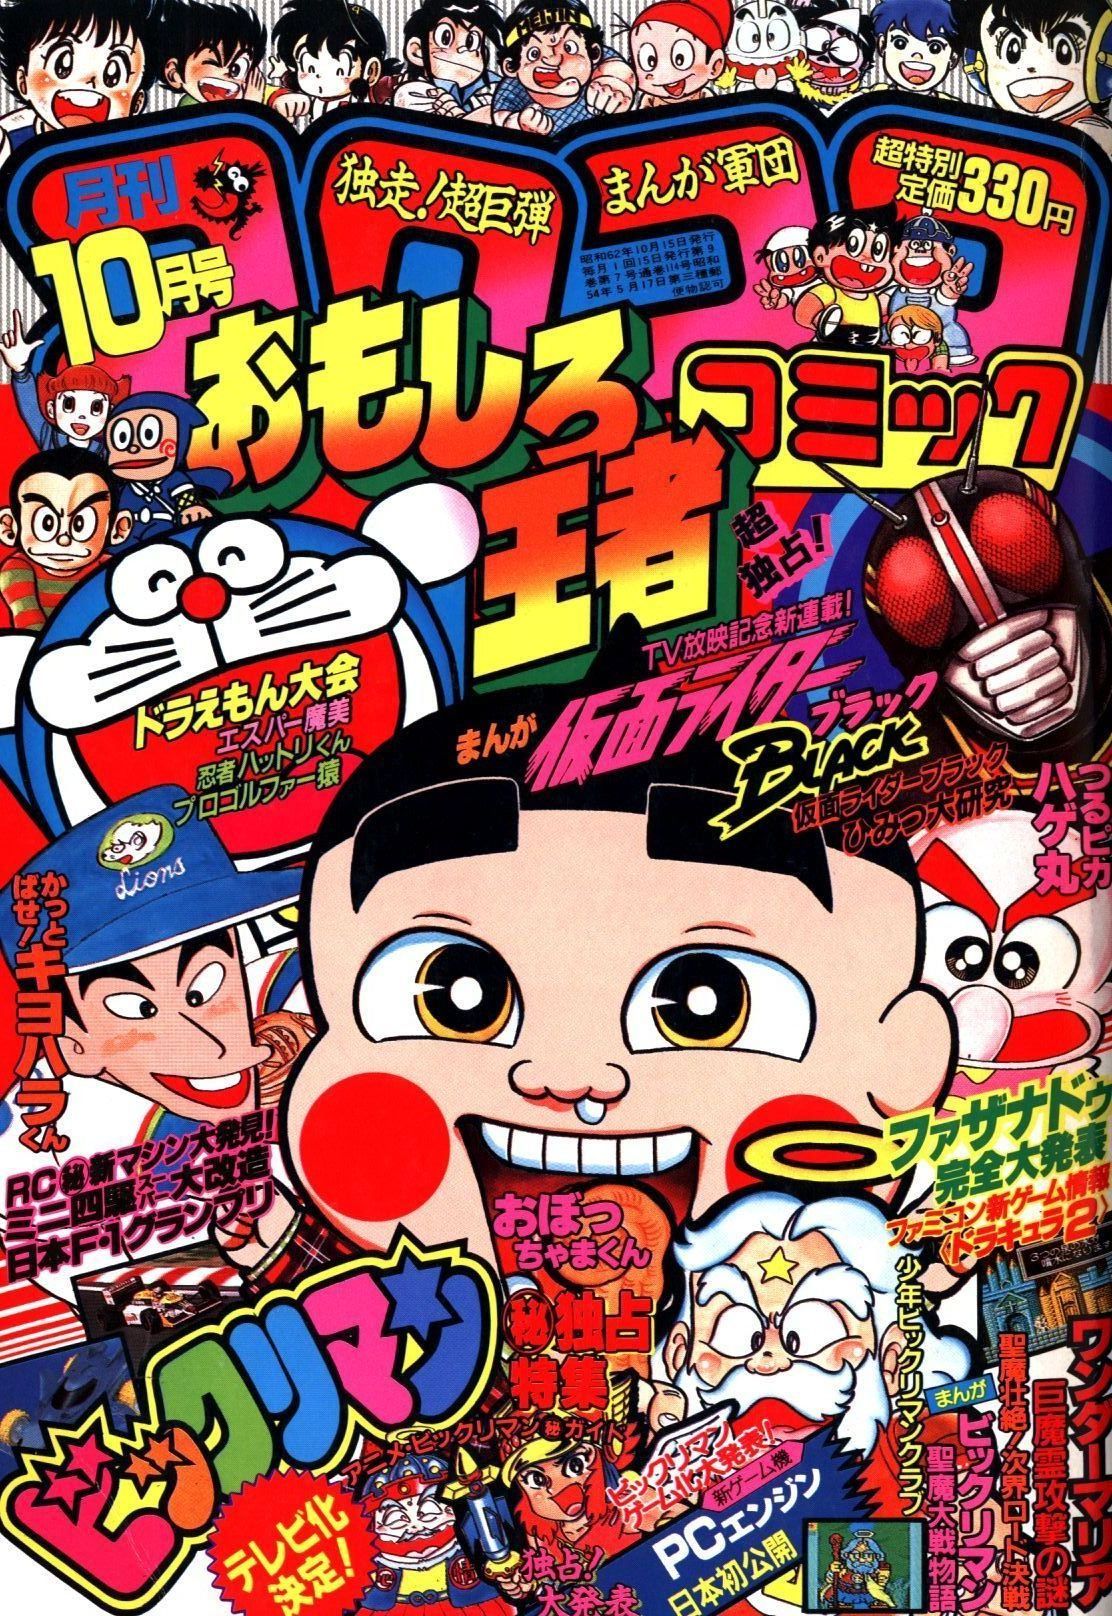 小学館 1987年(昭和62年)の漫画雑誌 月刊コロコロコミック 1987年(昭和